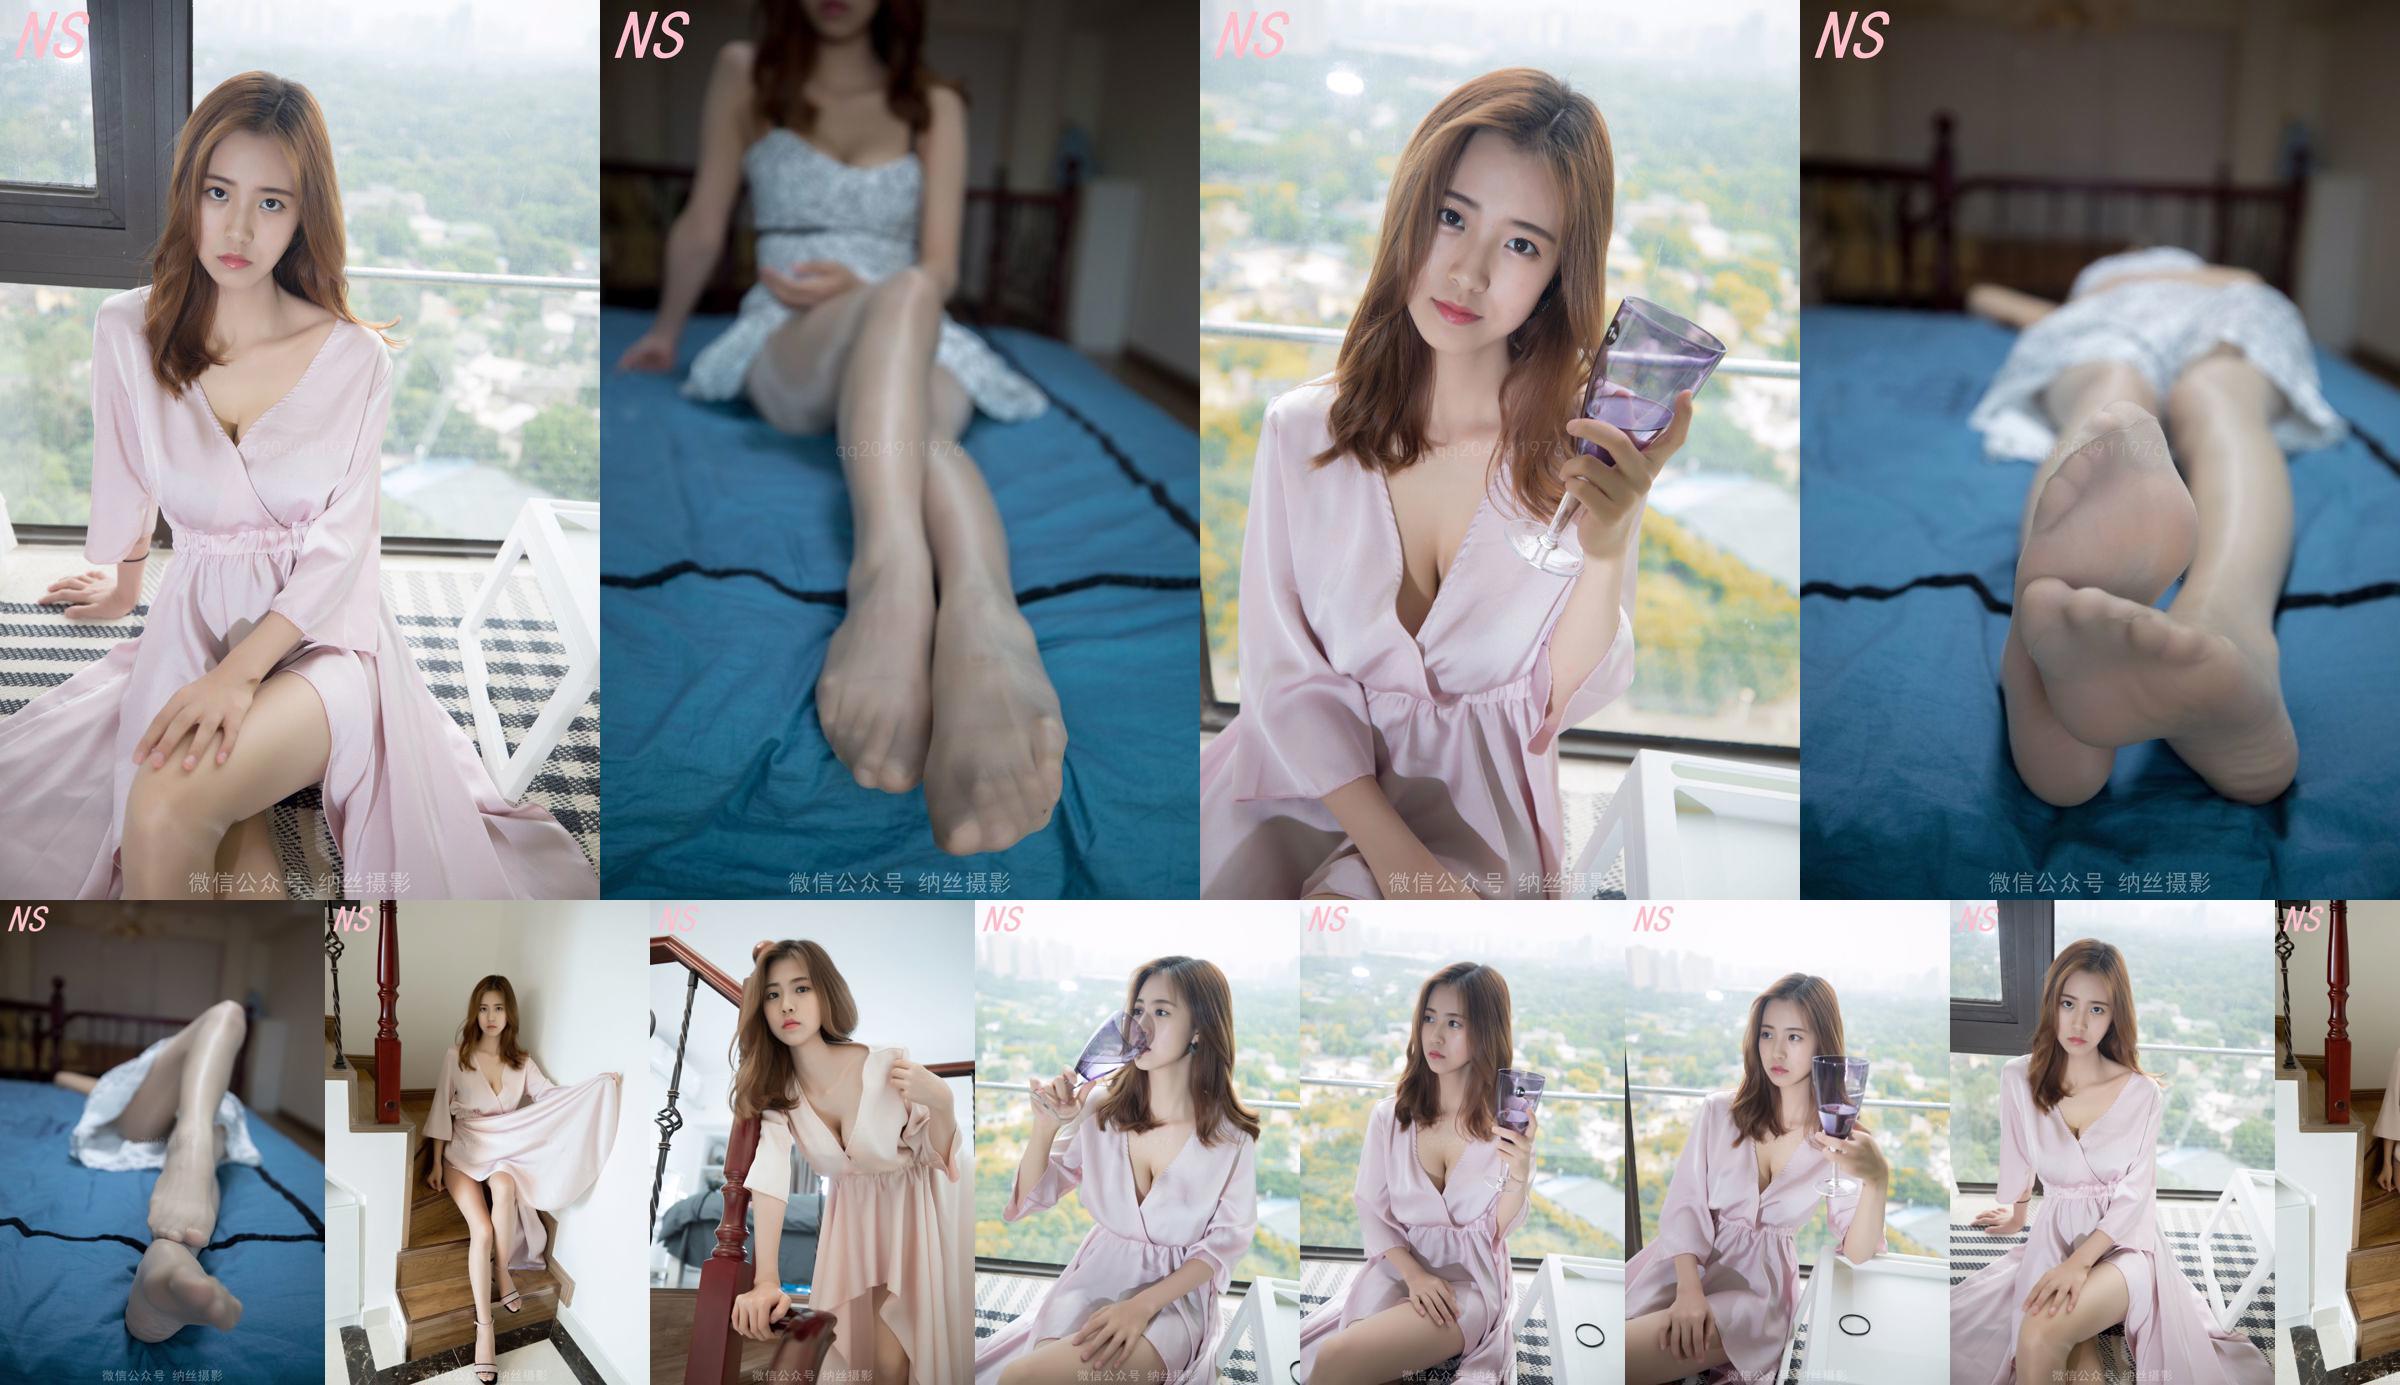 Beauty anchor Hanshuang "The Temptation of Pajamas" [Nasi Photography] No.f535de Page 17